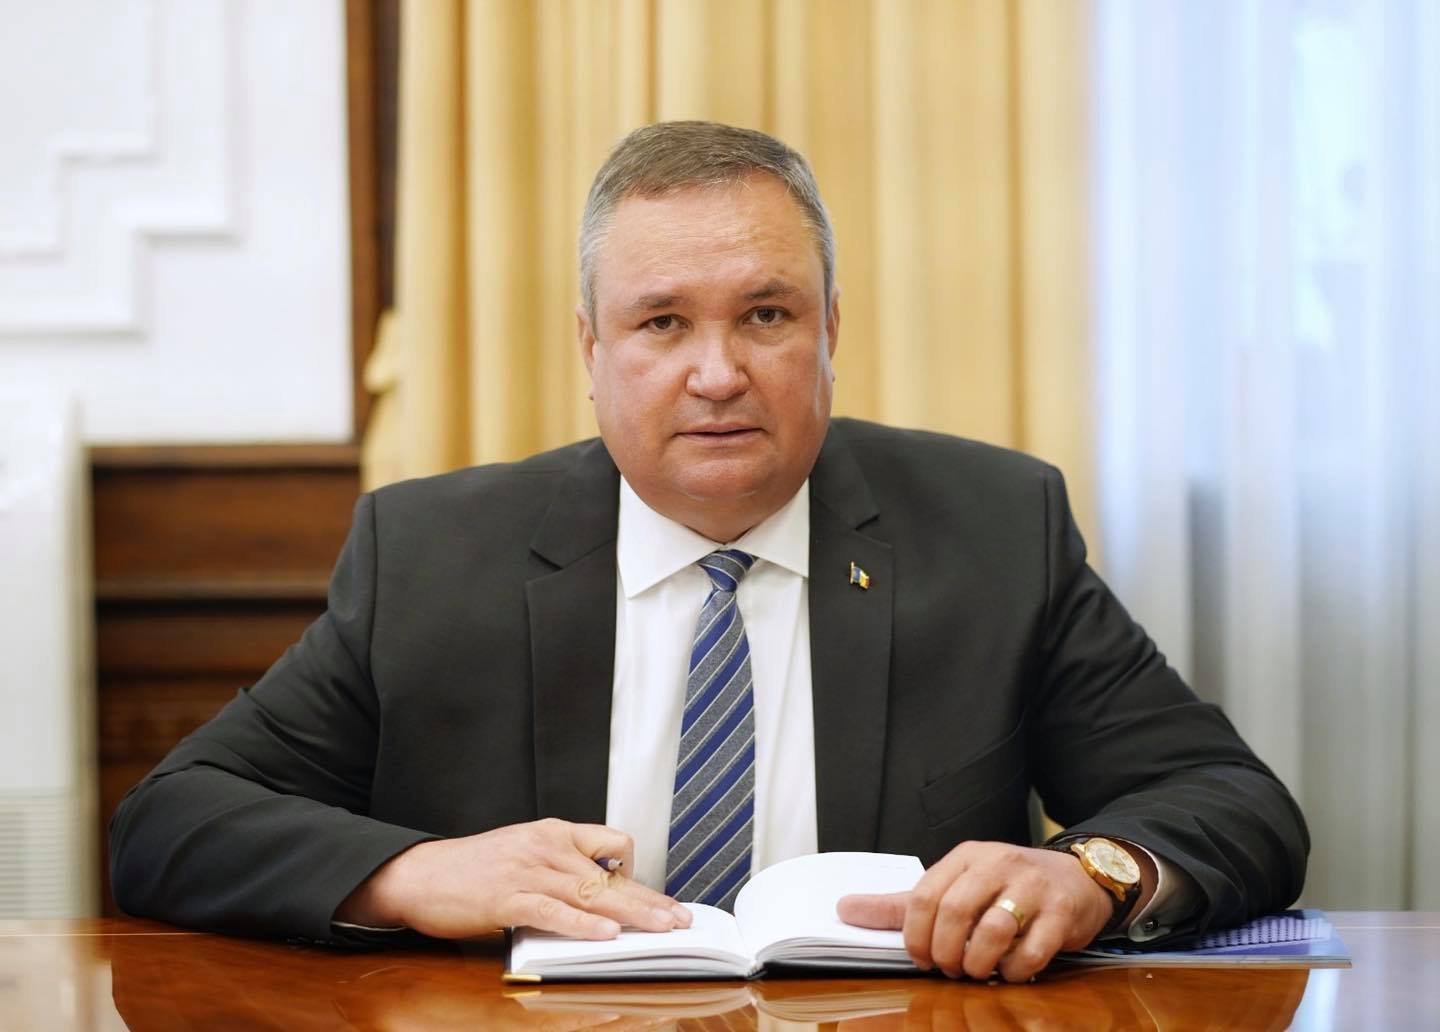  Nicolae Ciucă, după ce a fost ales preşedinte al Senatului: Doresc să vă mulţumesc pentru votul de încredere